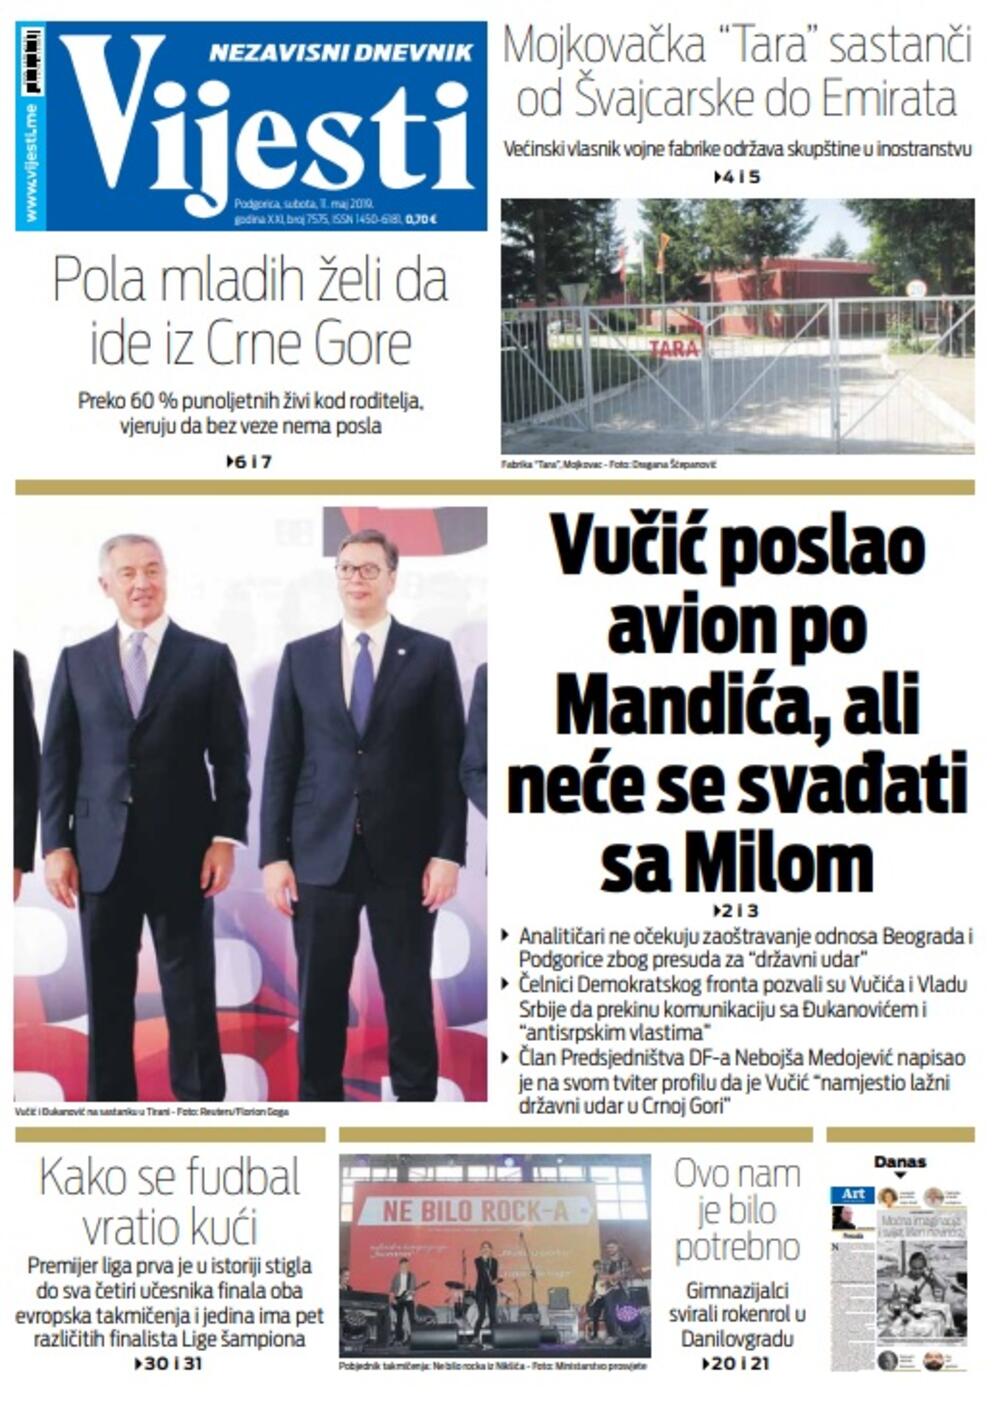 Naslovna strana "Vijesti" za 11. maj, Foto: Vijesti